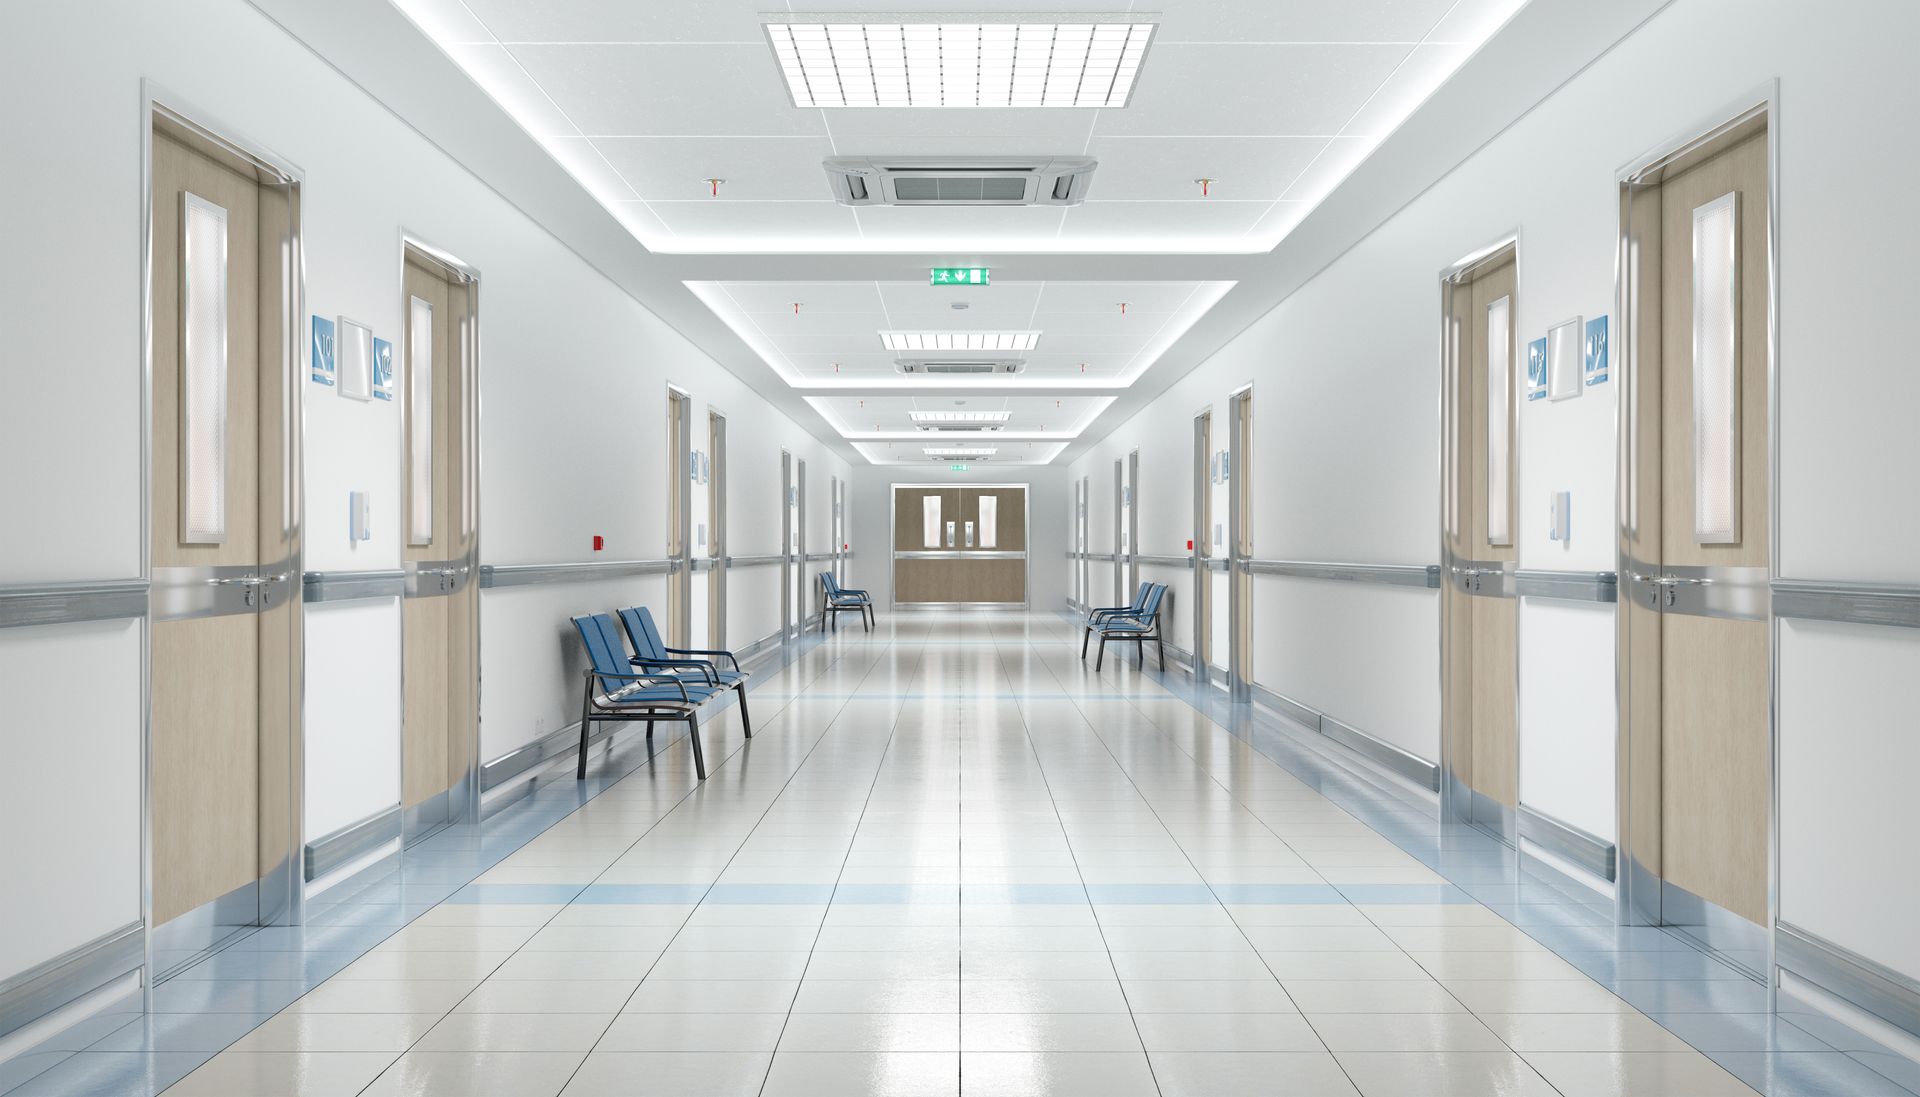 Le couloir vide d'un hôpital.